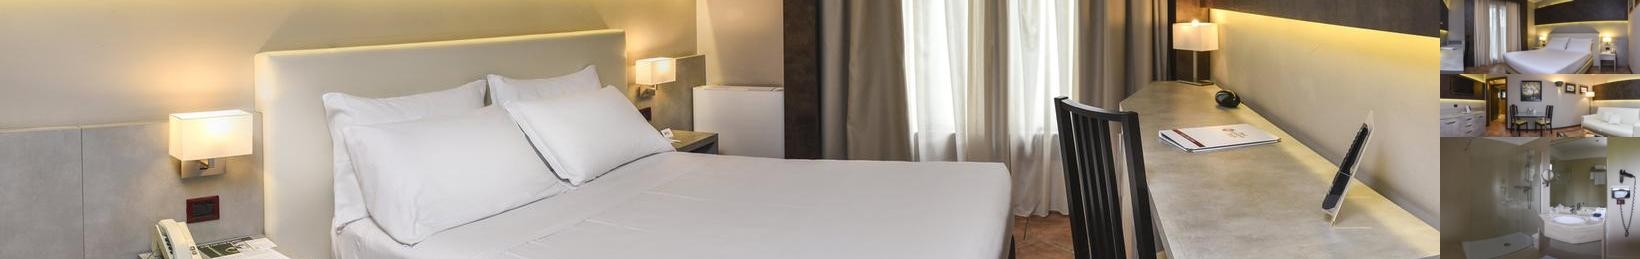 Best Western Plus Hotel Modena Resort photo collage